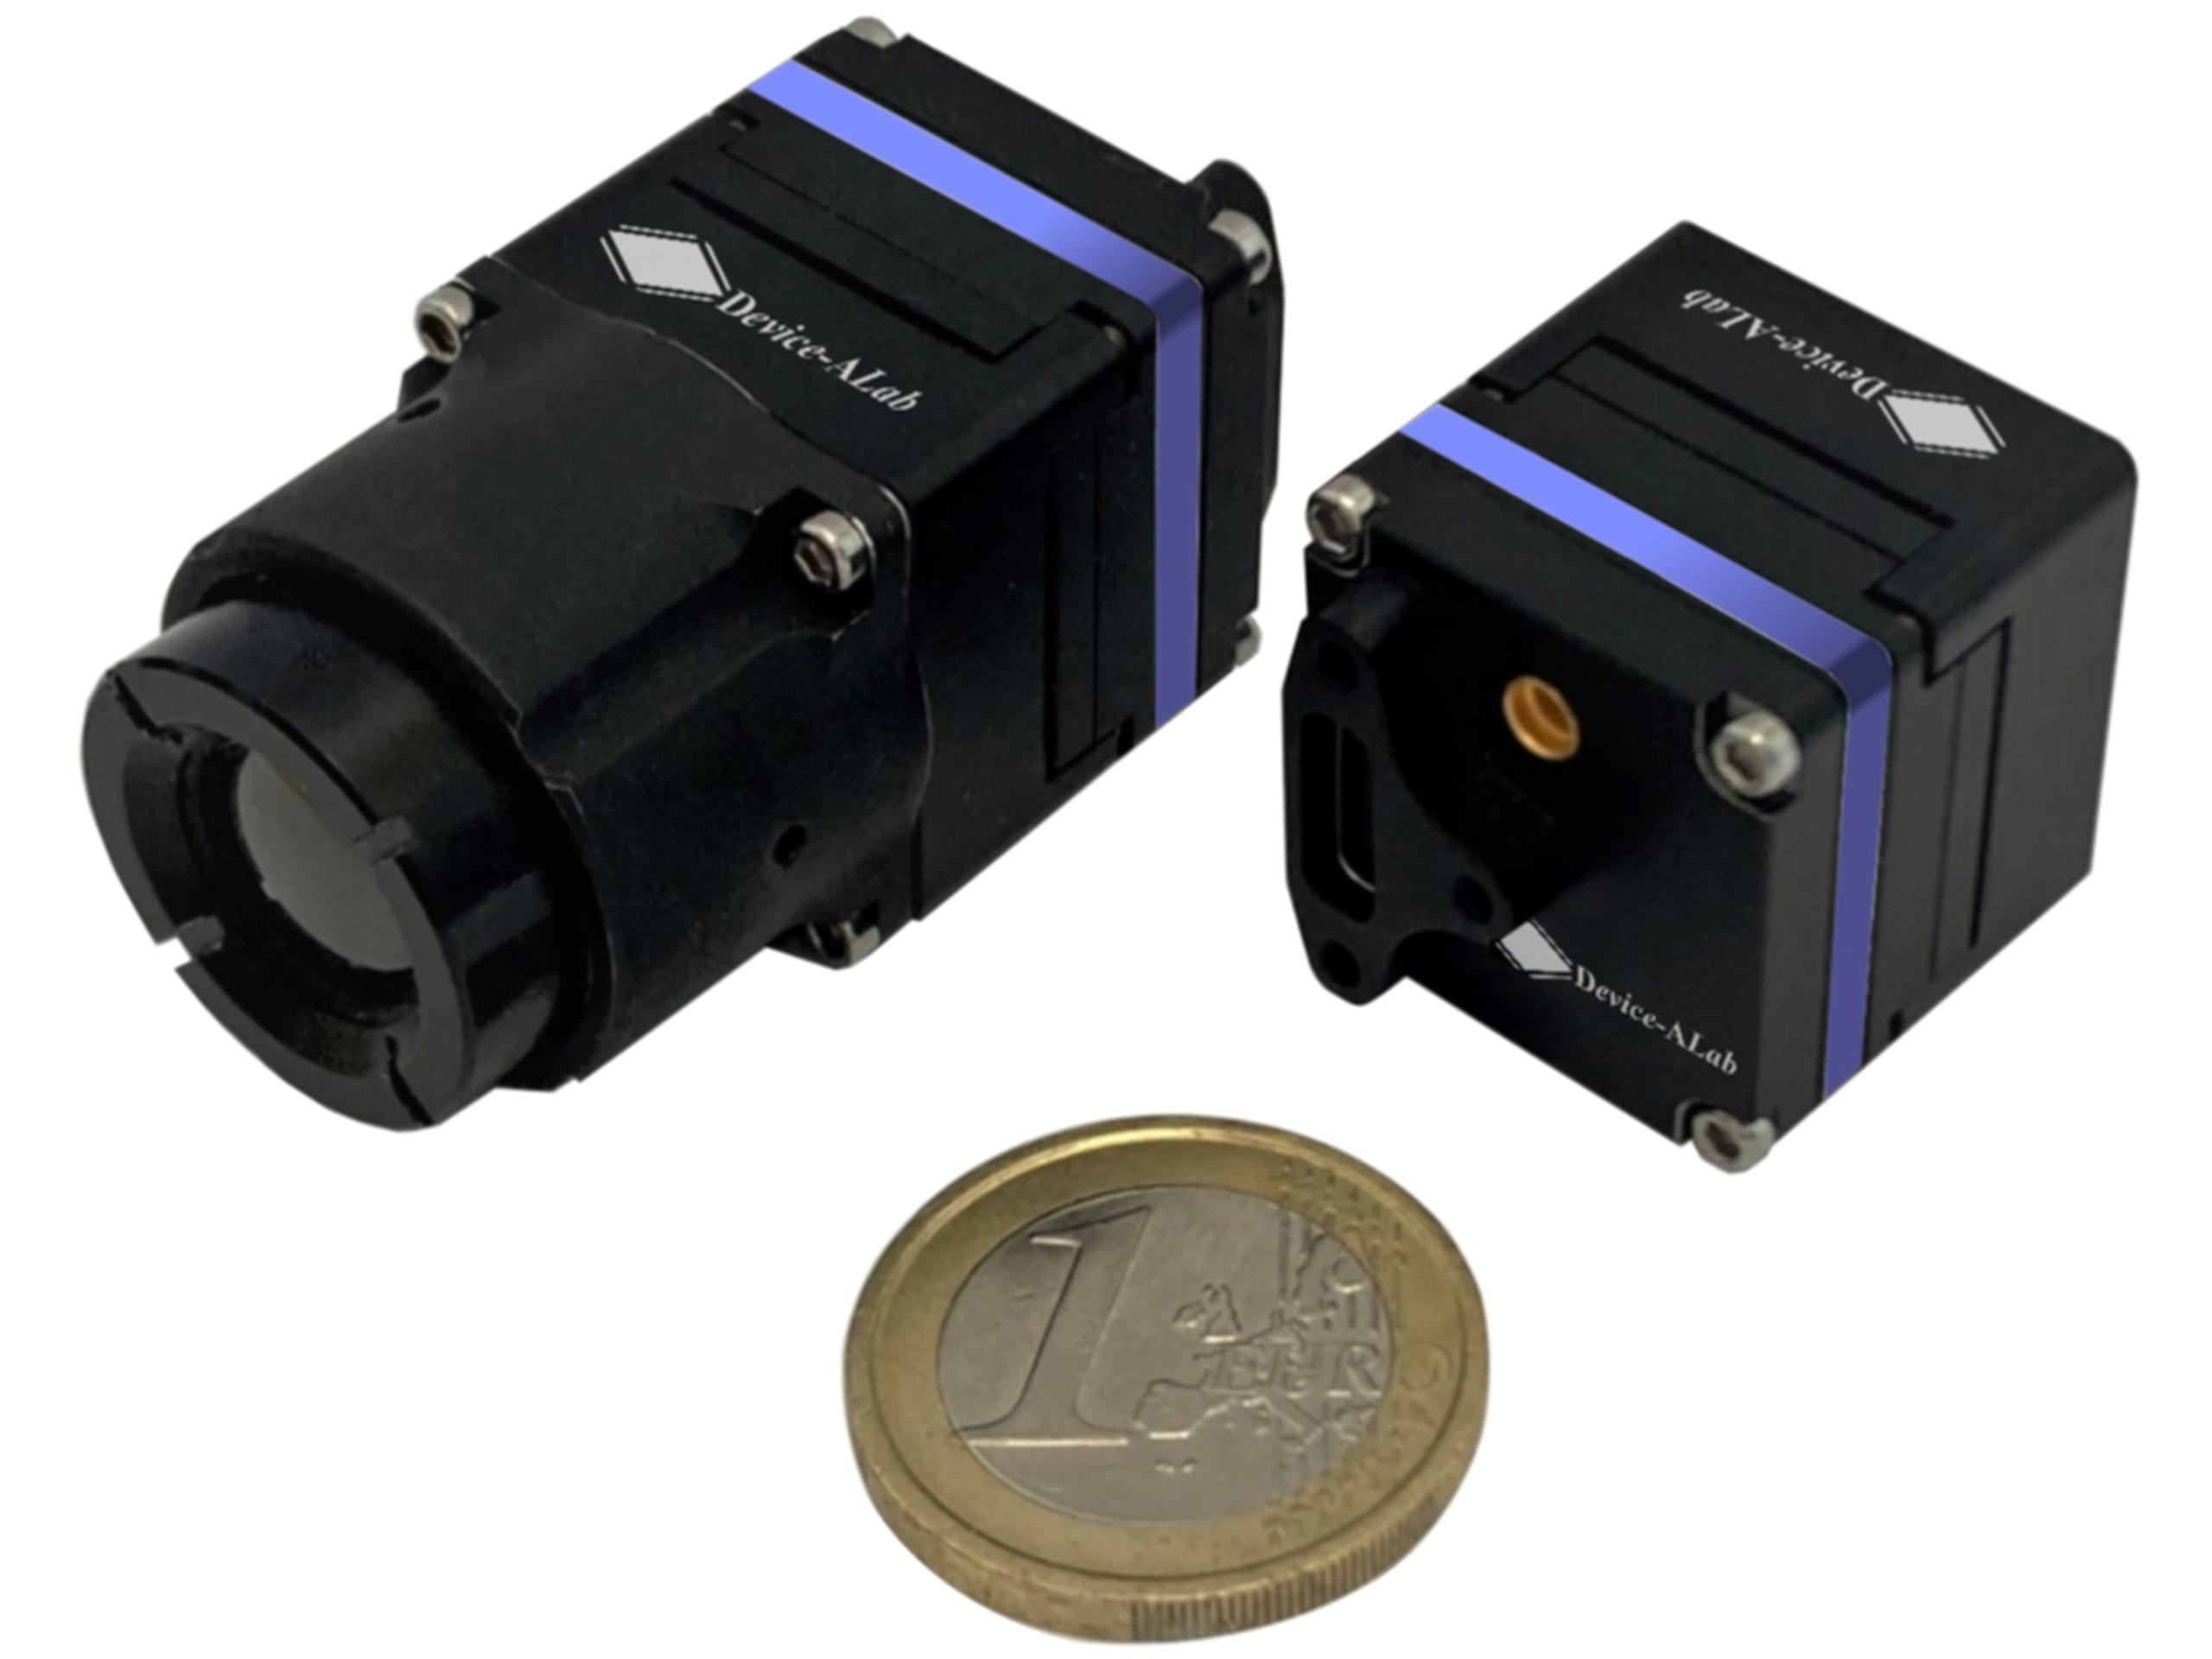 ﻿نواة الكاميرا الصغرية MICROCUBES640 التي يشابه حجمها عملة يورو معدنية. الصورة:  Photonis